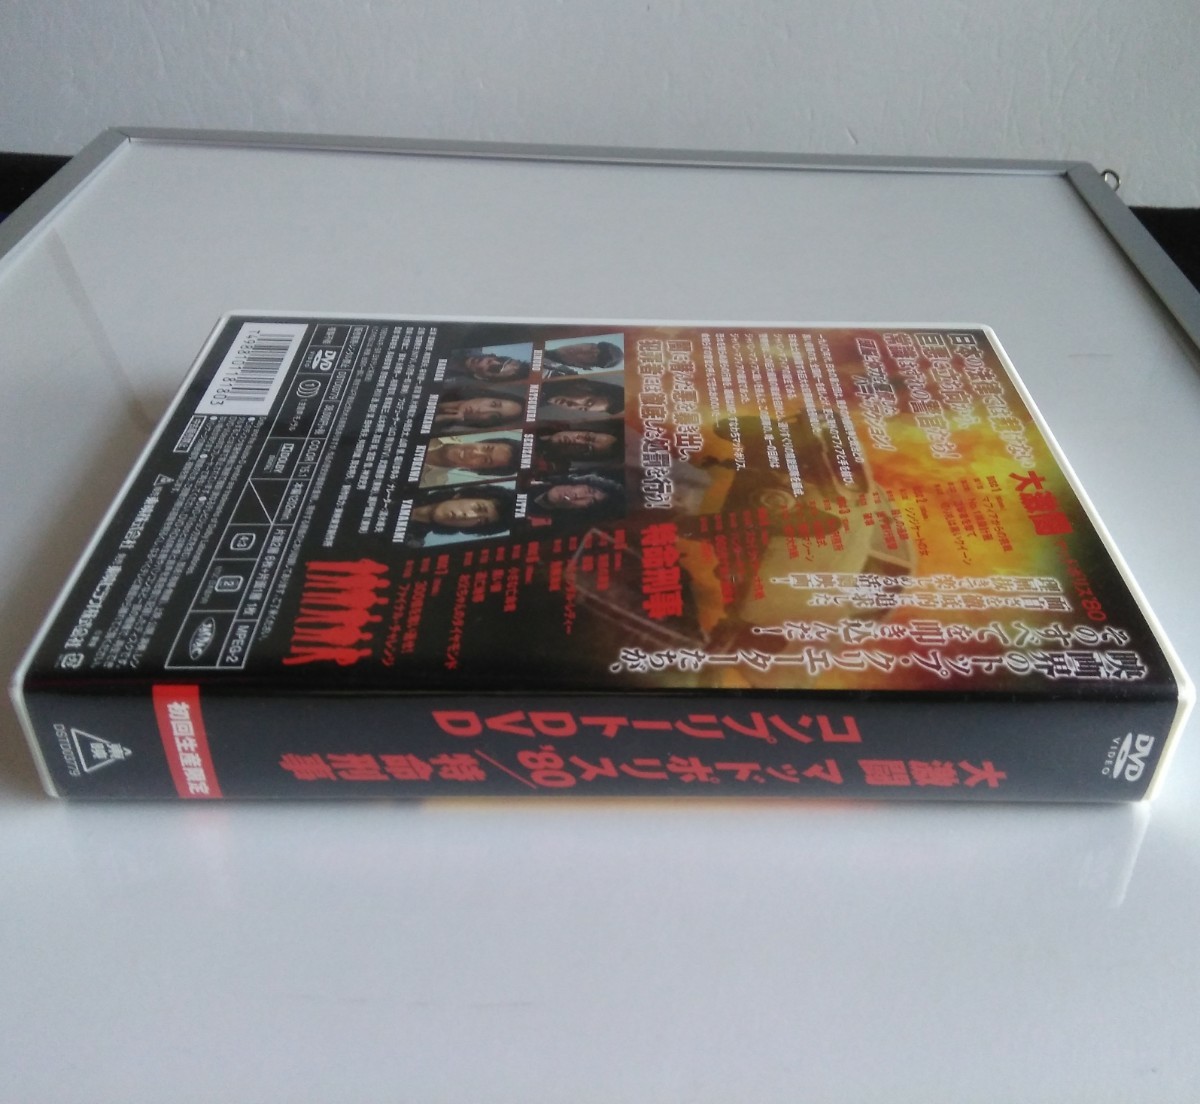 大激闘マッドポリス’80 DVD-BOX